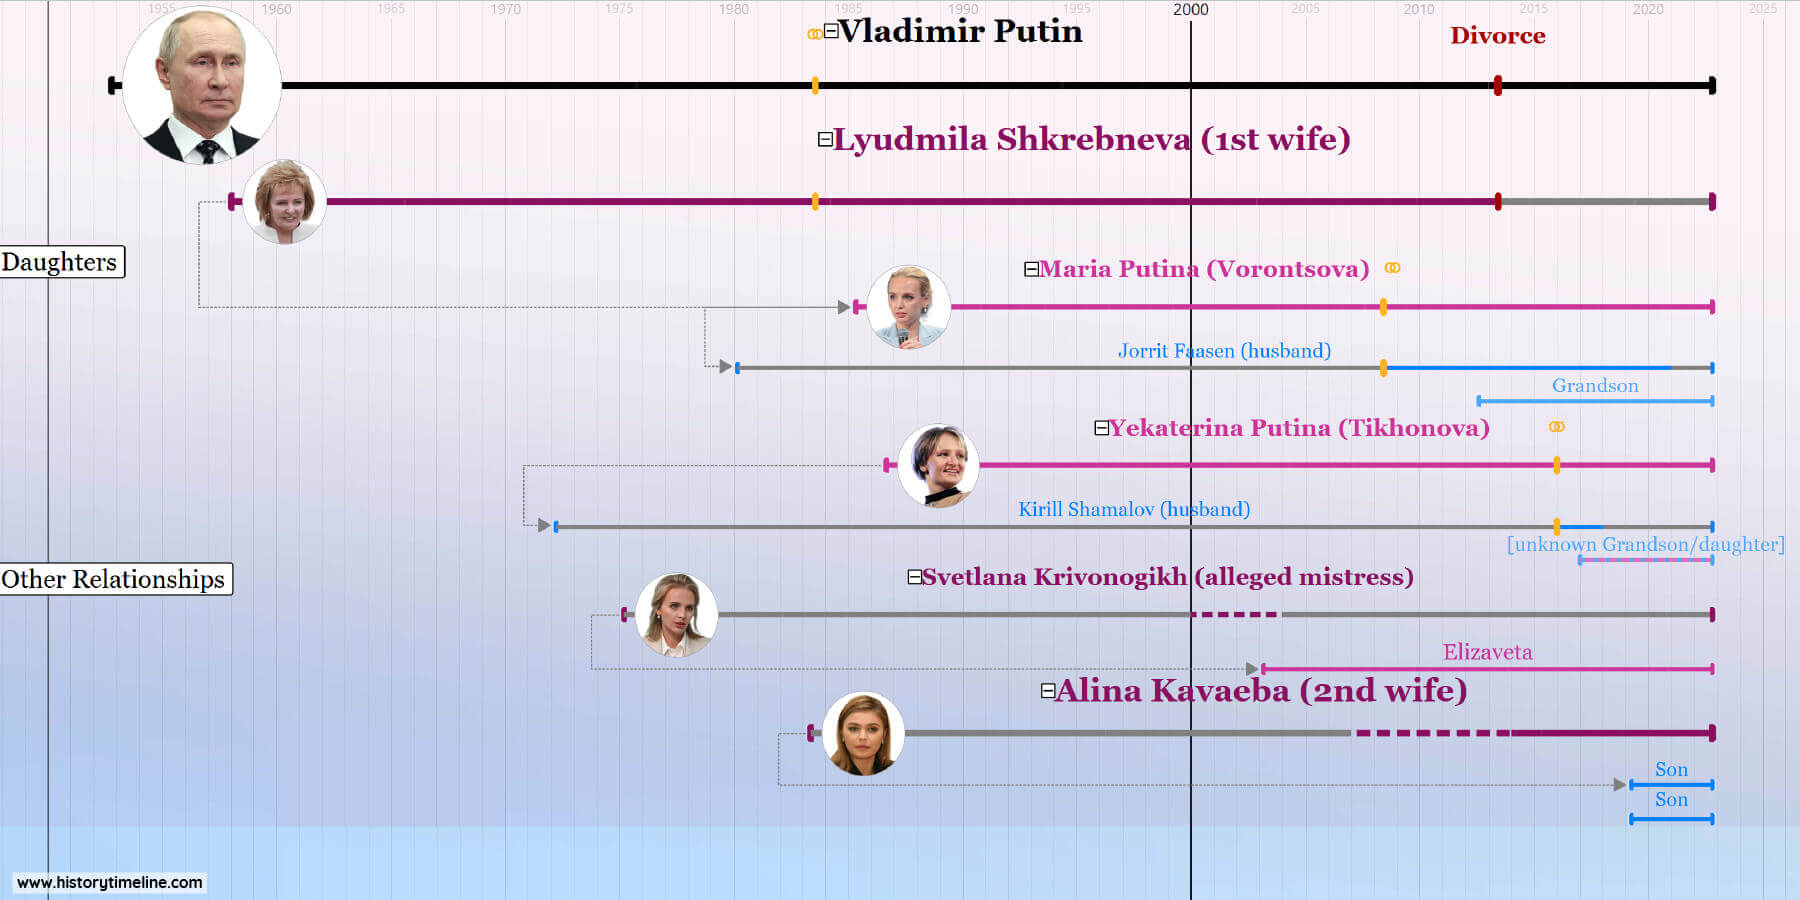 Putin_Timeline3